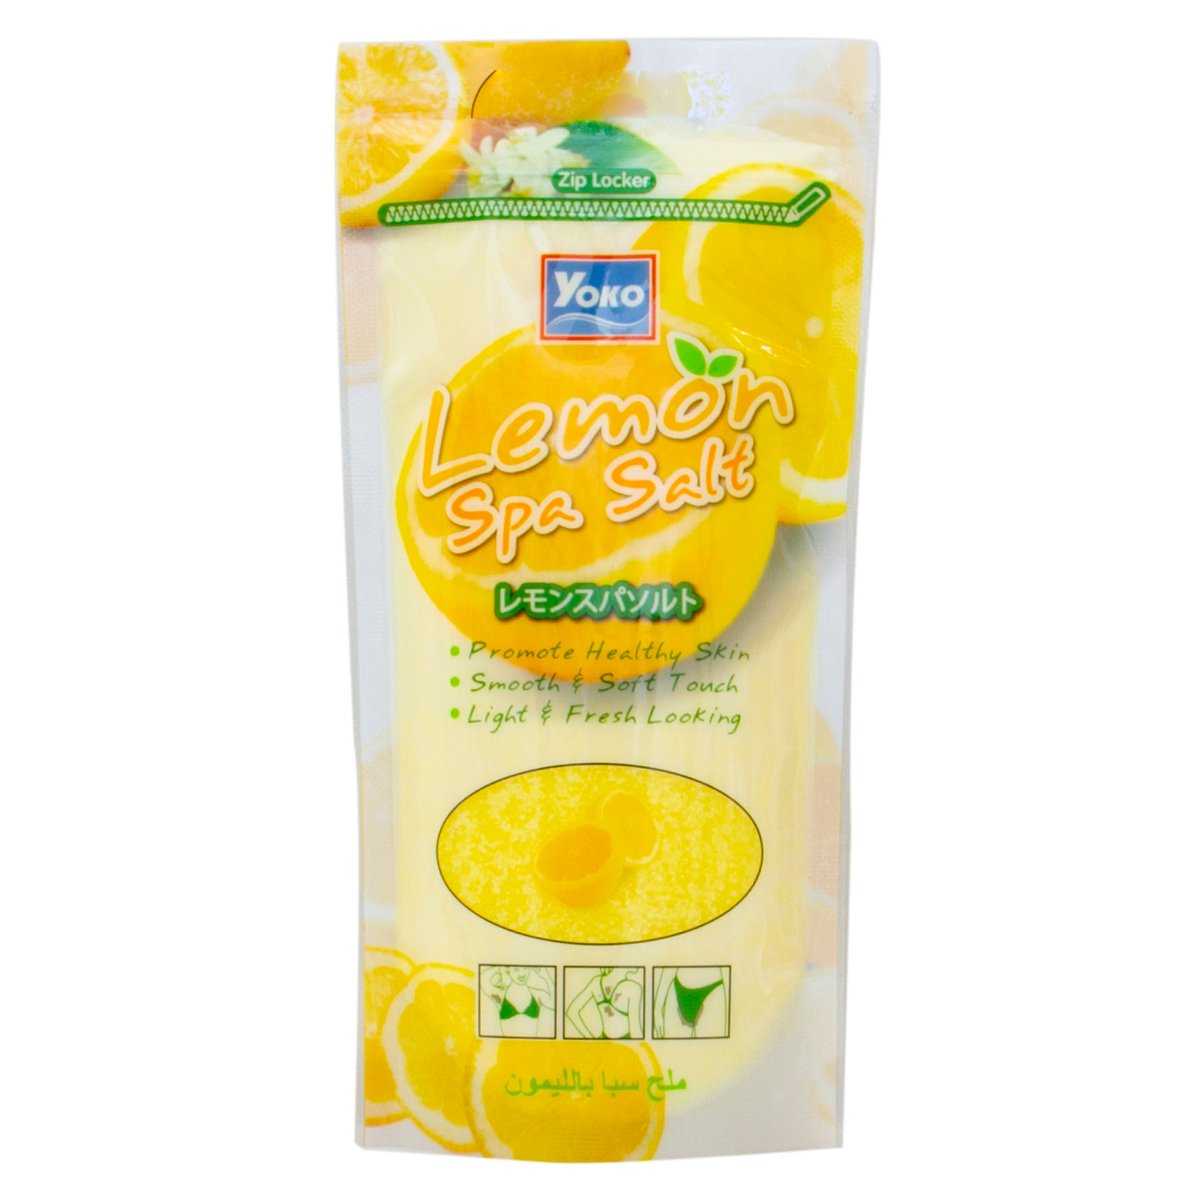 Buy Yoko Spa Salt Lemon 300 g Online at Best Price | Bath Additives | Lulu UAE in UAE